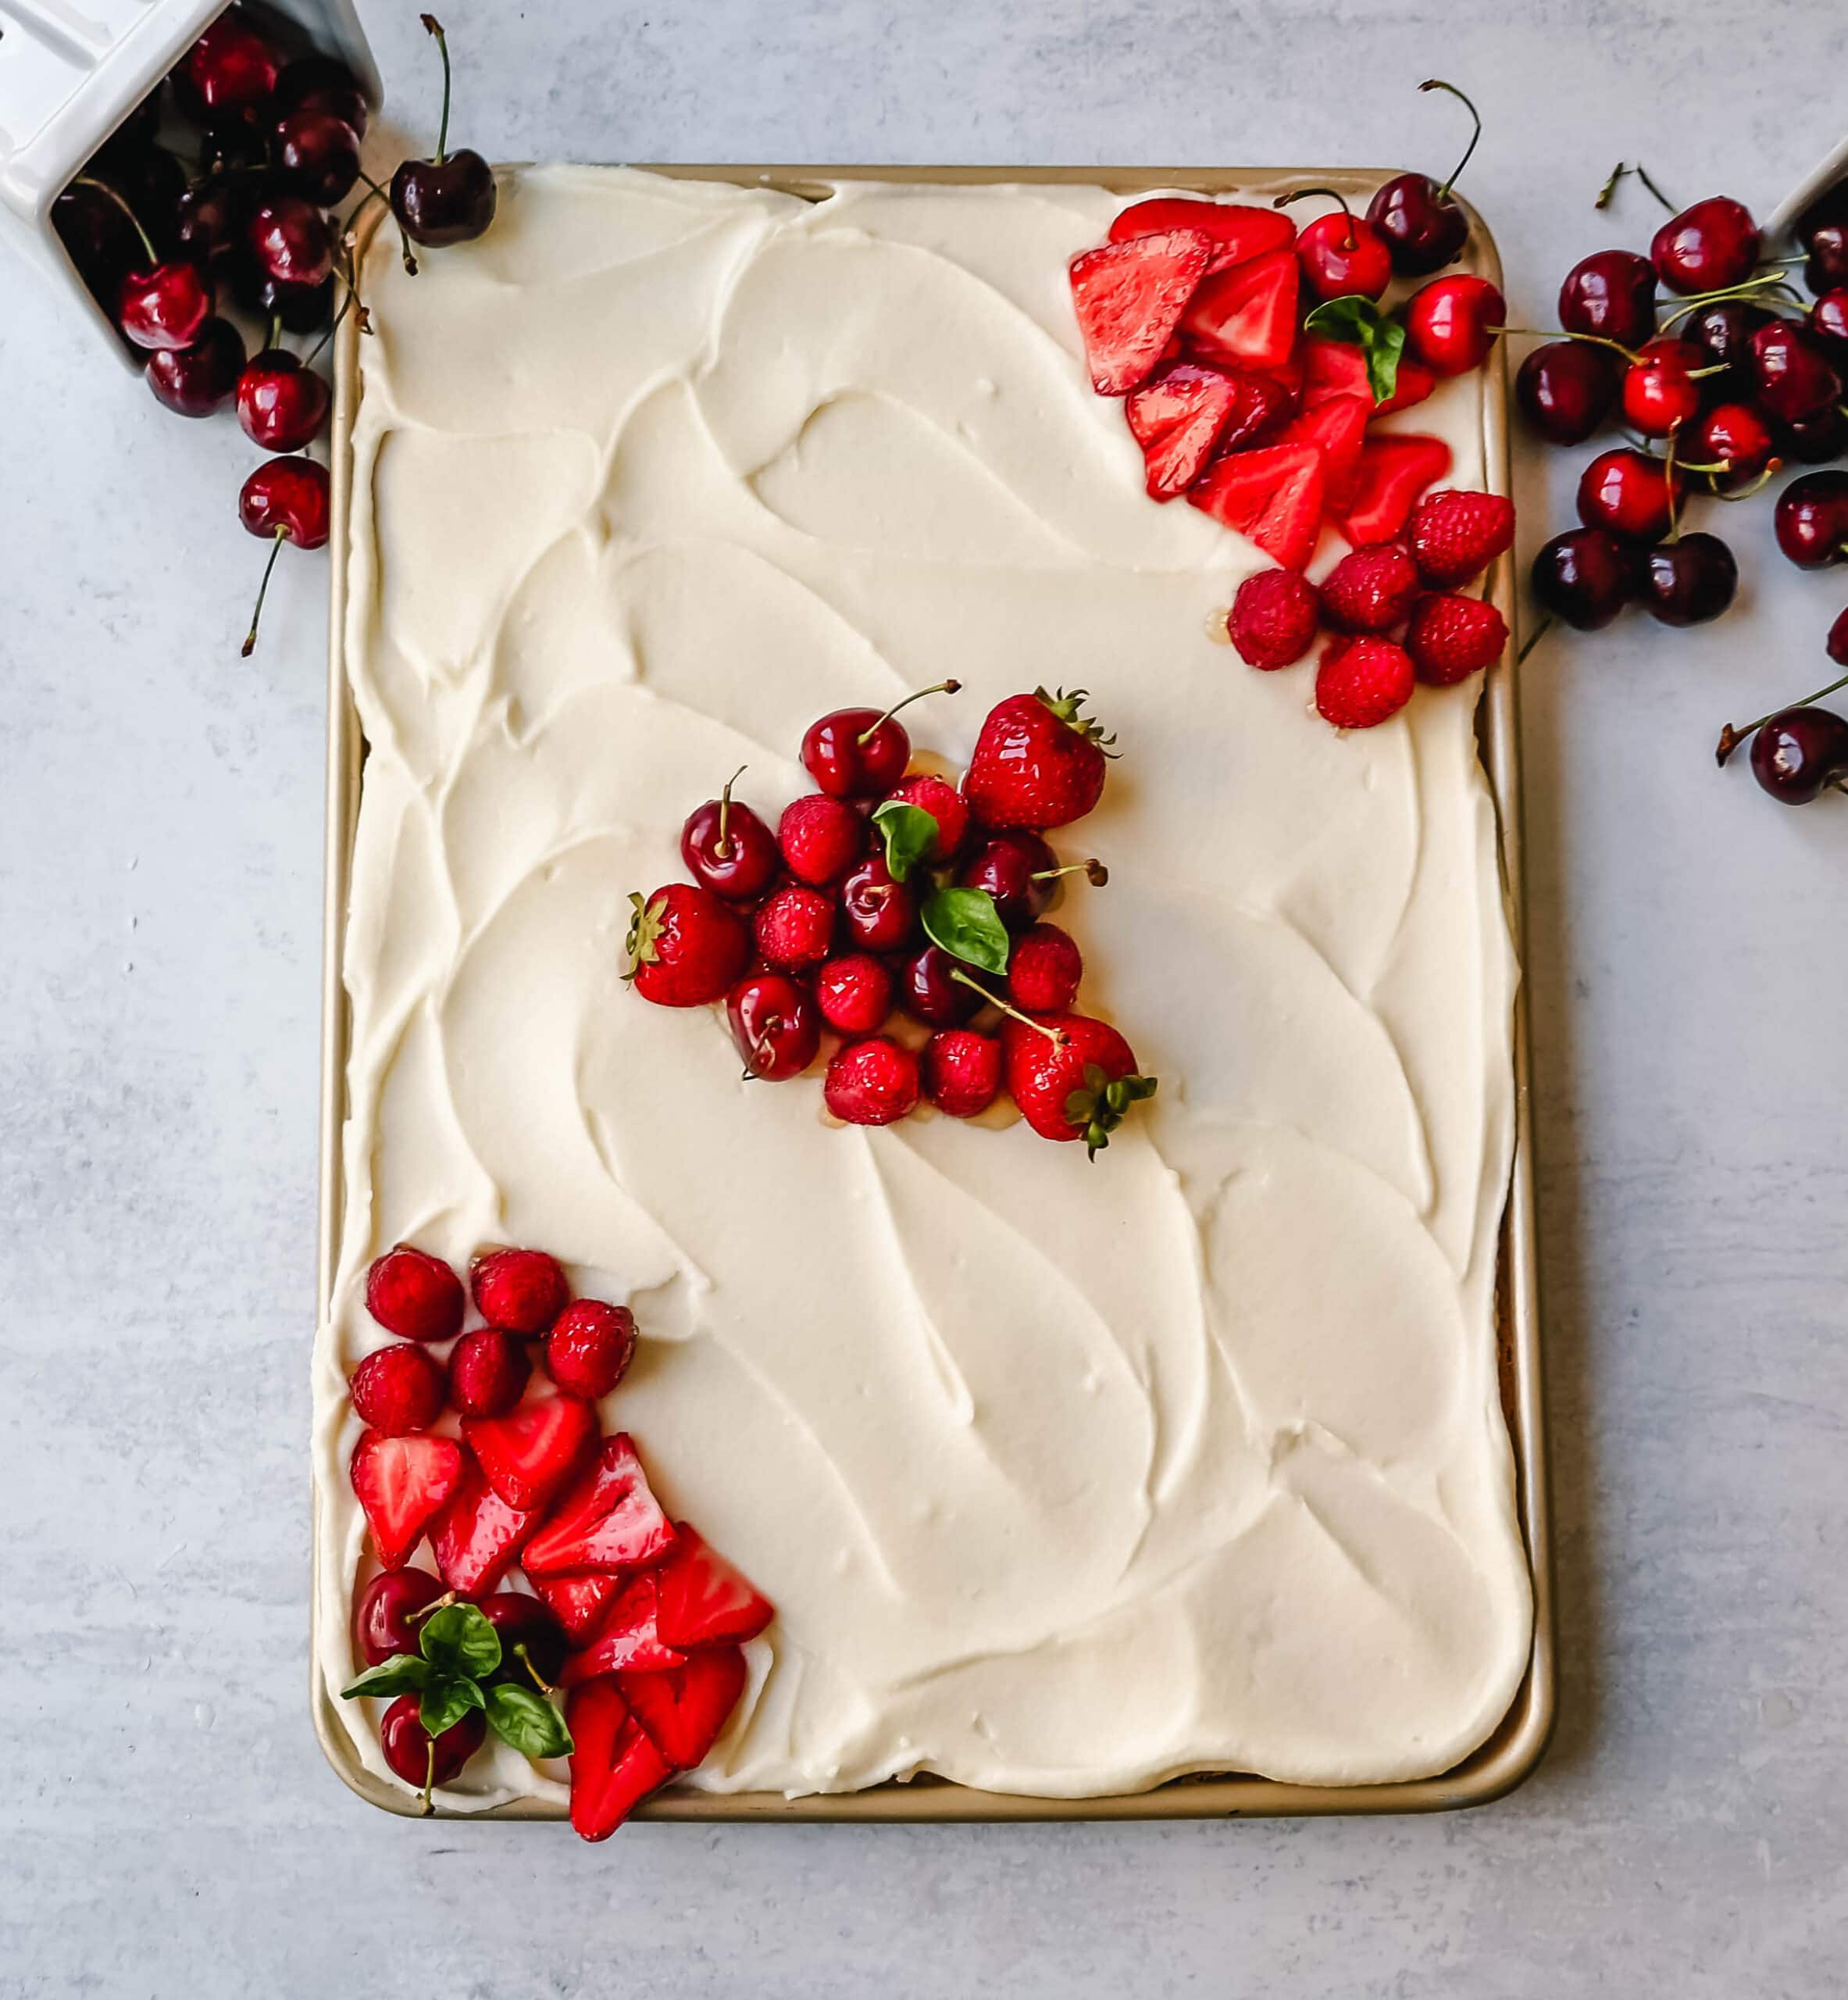 White Texas Sheet Cake Recipe with a moist vanilla sheet cake topped with a creamy vanilla buttercream frosting. An easy white Texas sheet cake that tastes delicious!